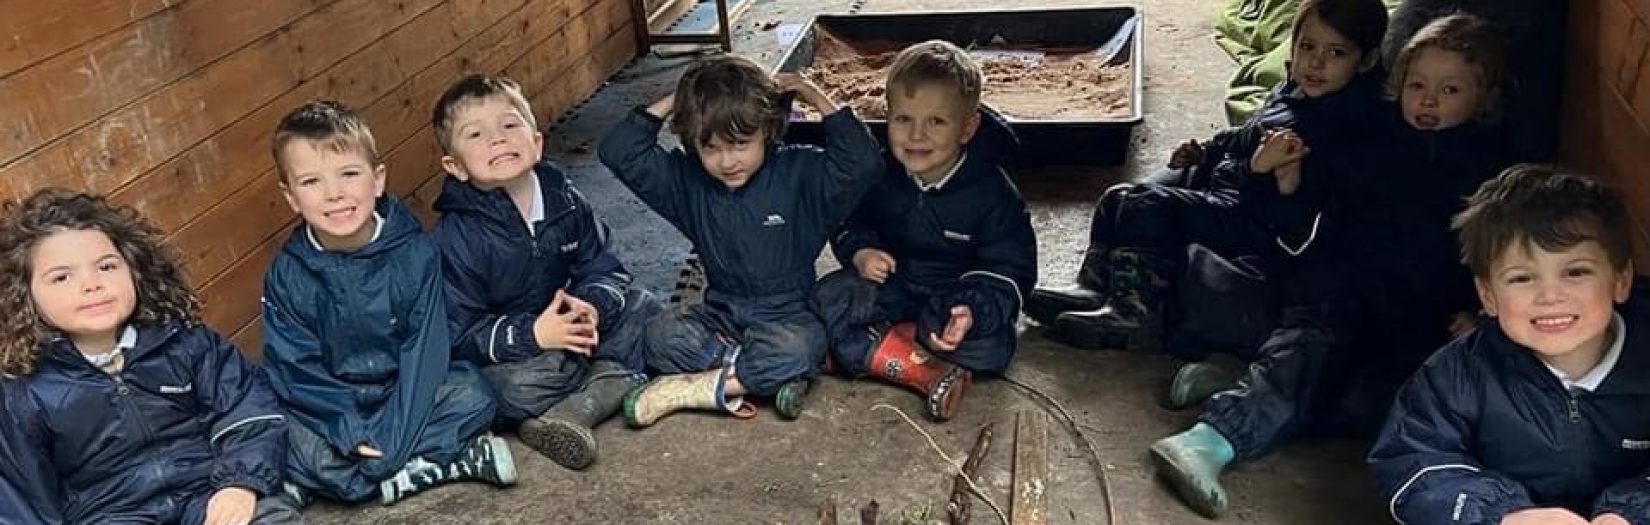 children in woodland shelter